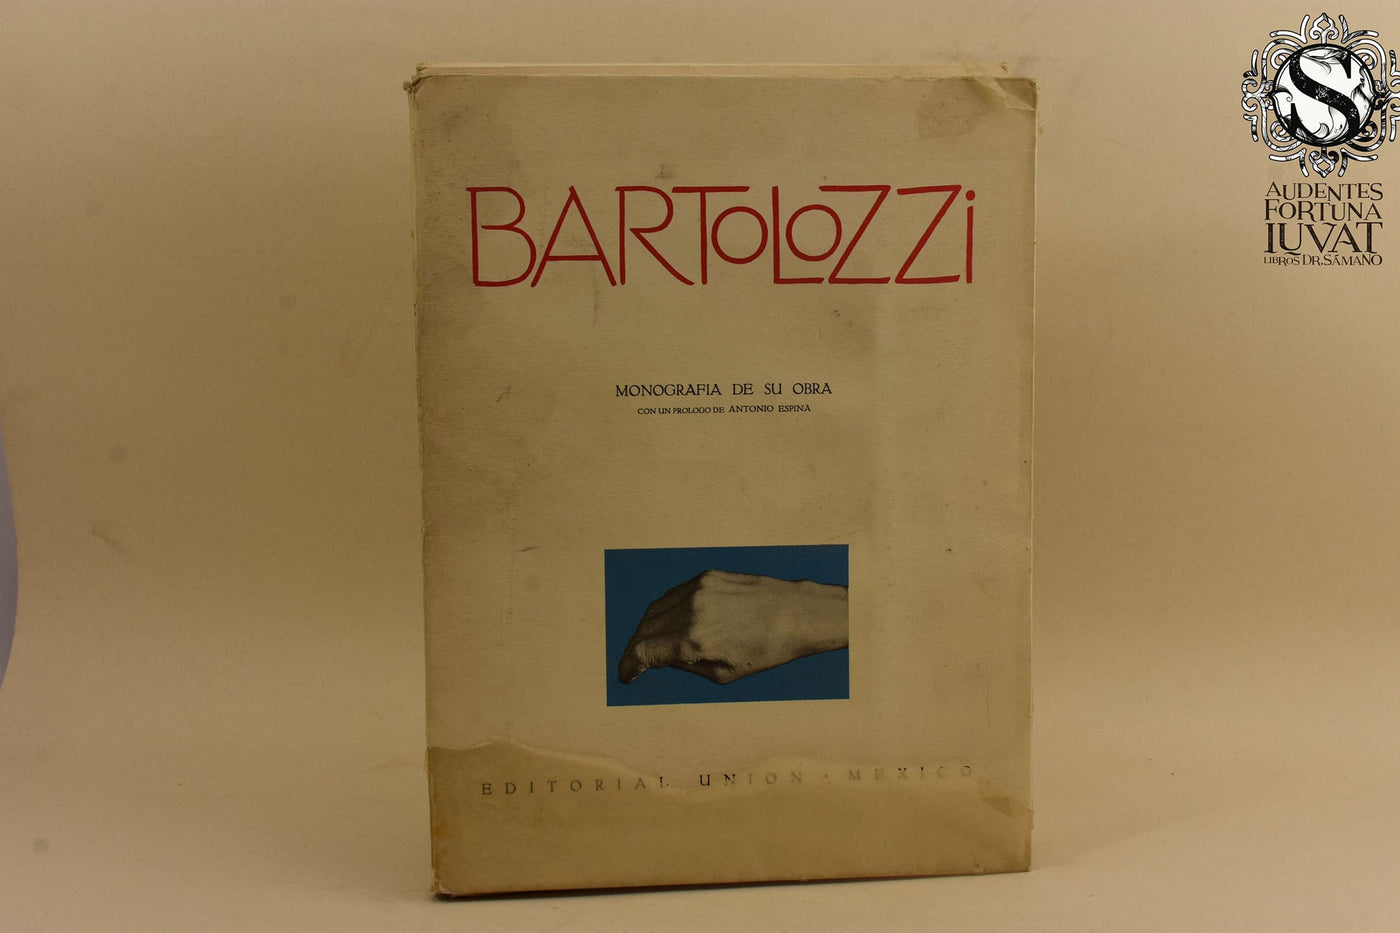 BARTOLOZZI - Monografía de su obra